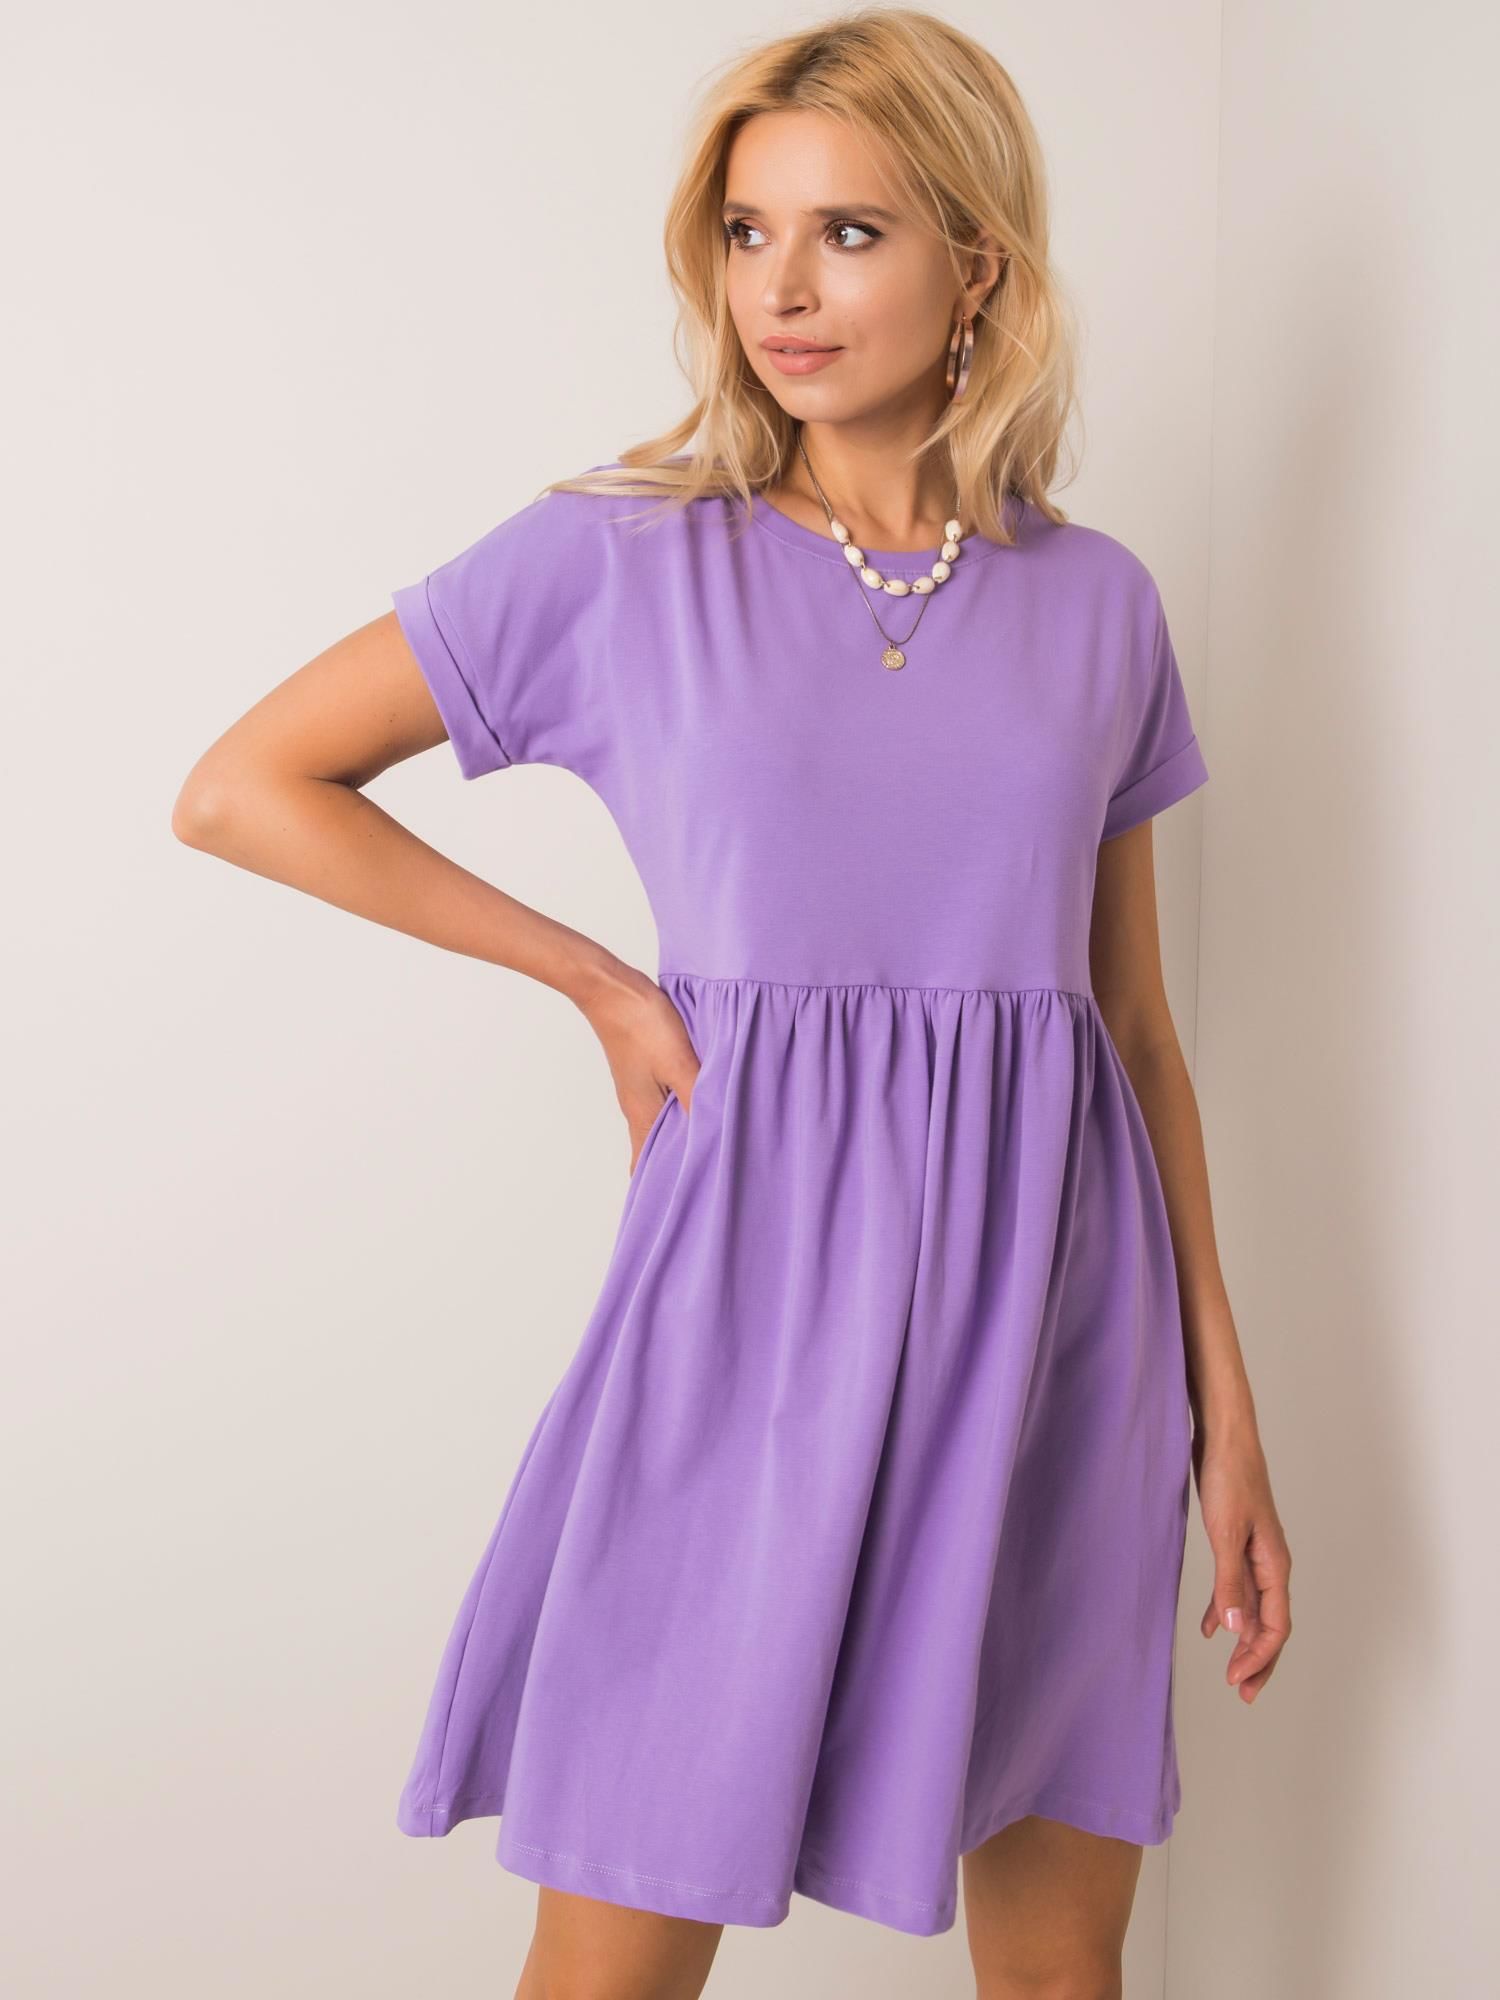 Dámské fialové šaty RV-SK-5672.03P-purple Velikost: XL